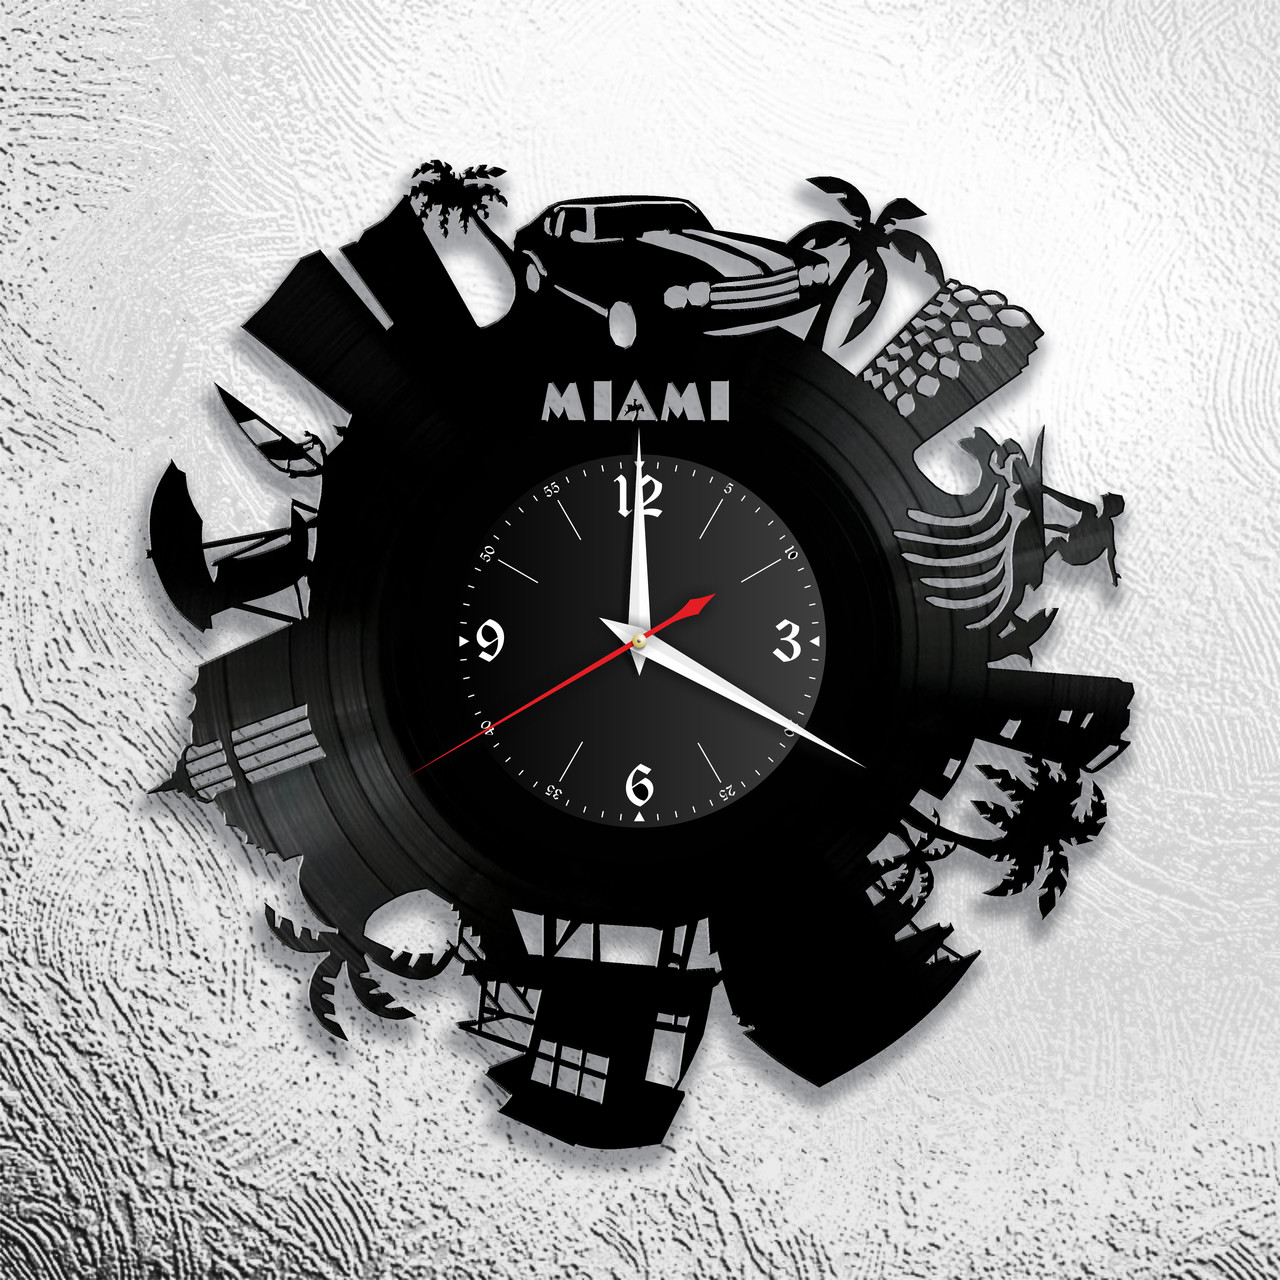 Оригинальные часы из виниловых пластинок  "Майами" версия 1